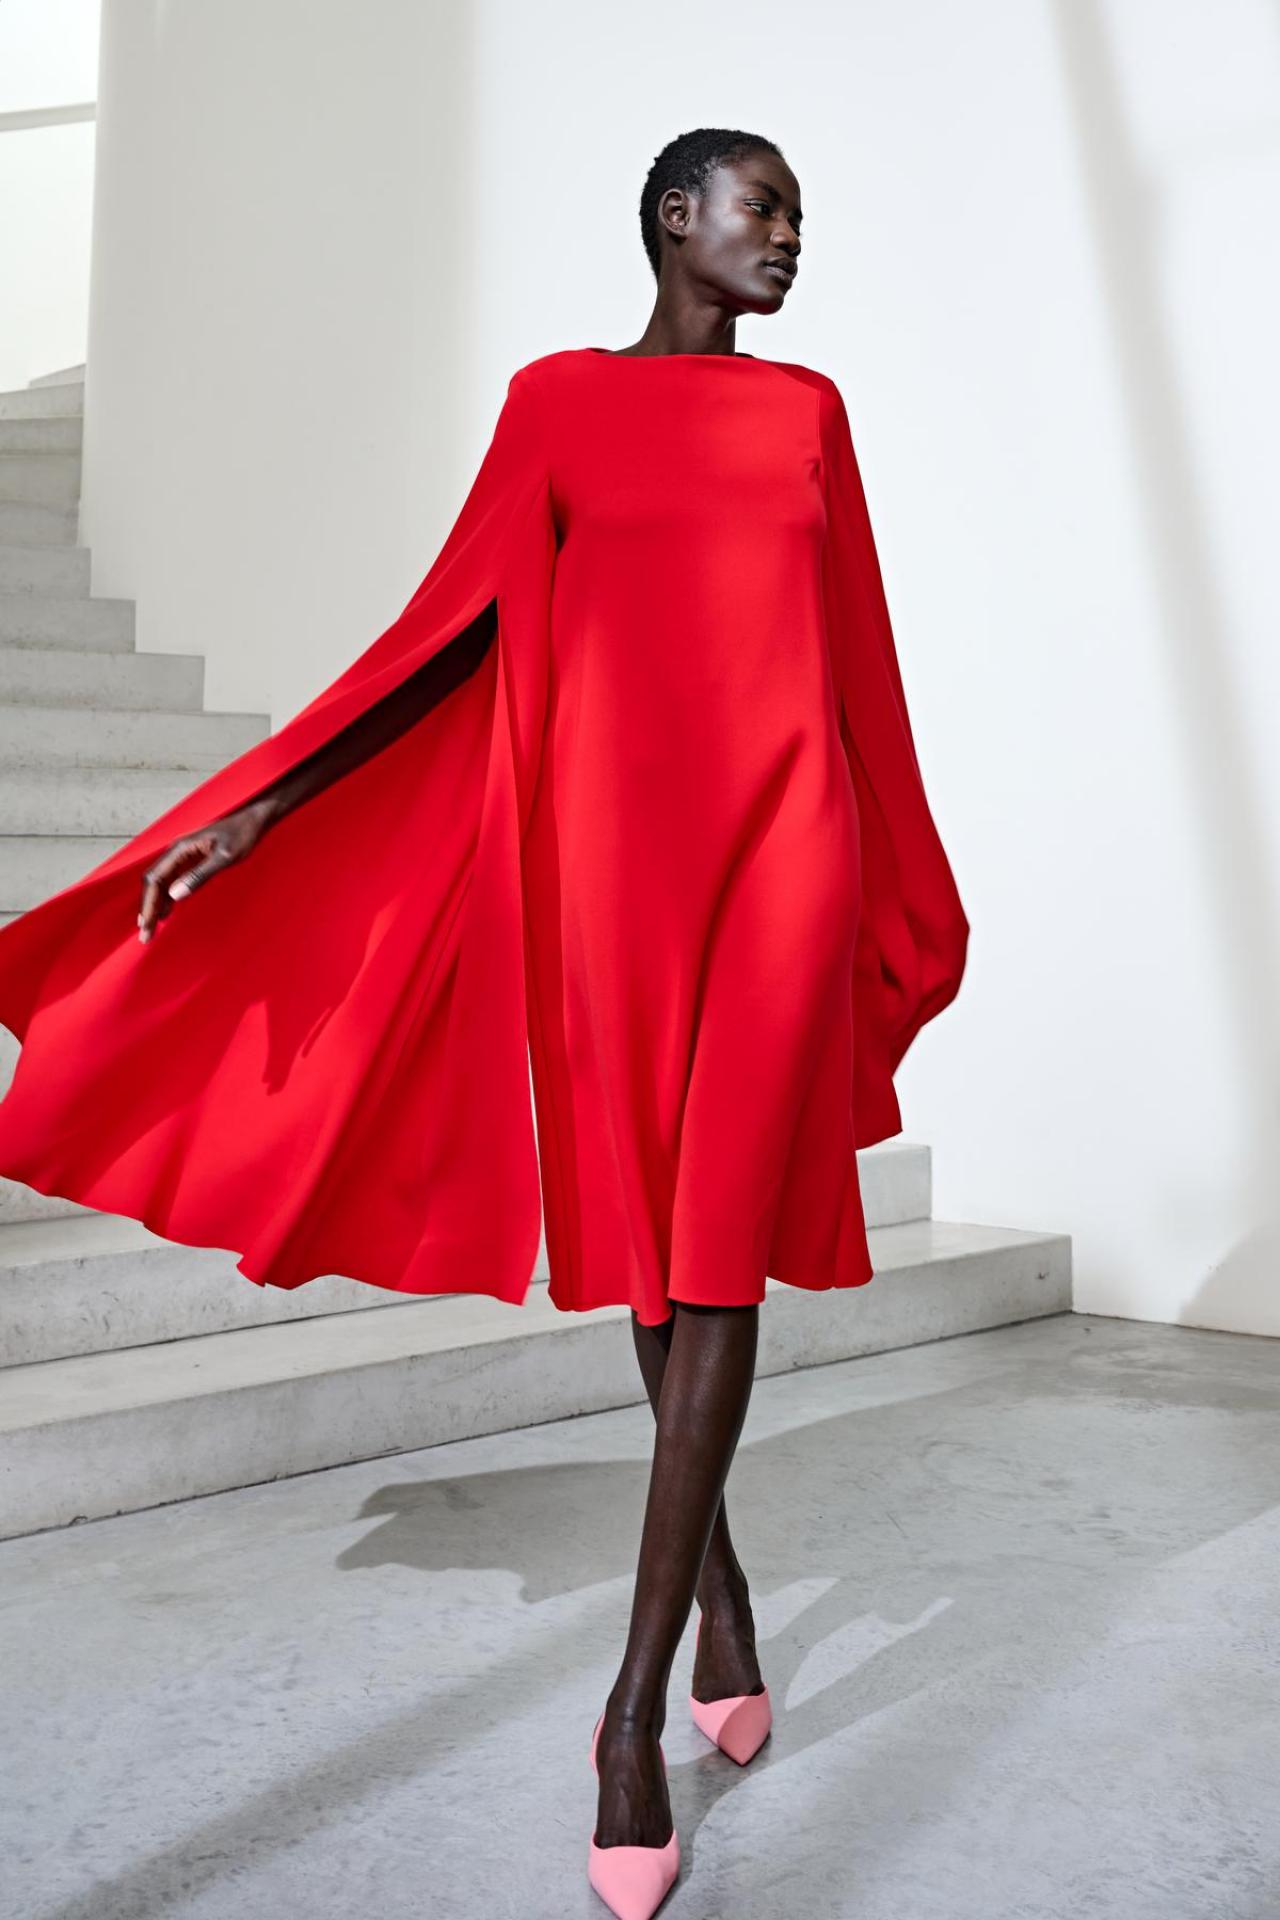 GracieusSoepel vallende jurk in zuiver rood, met opengewerkte lange mouwen, uit de couturecollectie van Natan (prijs op aanvraag).